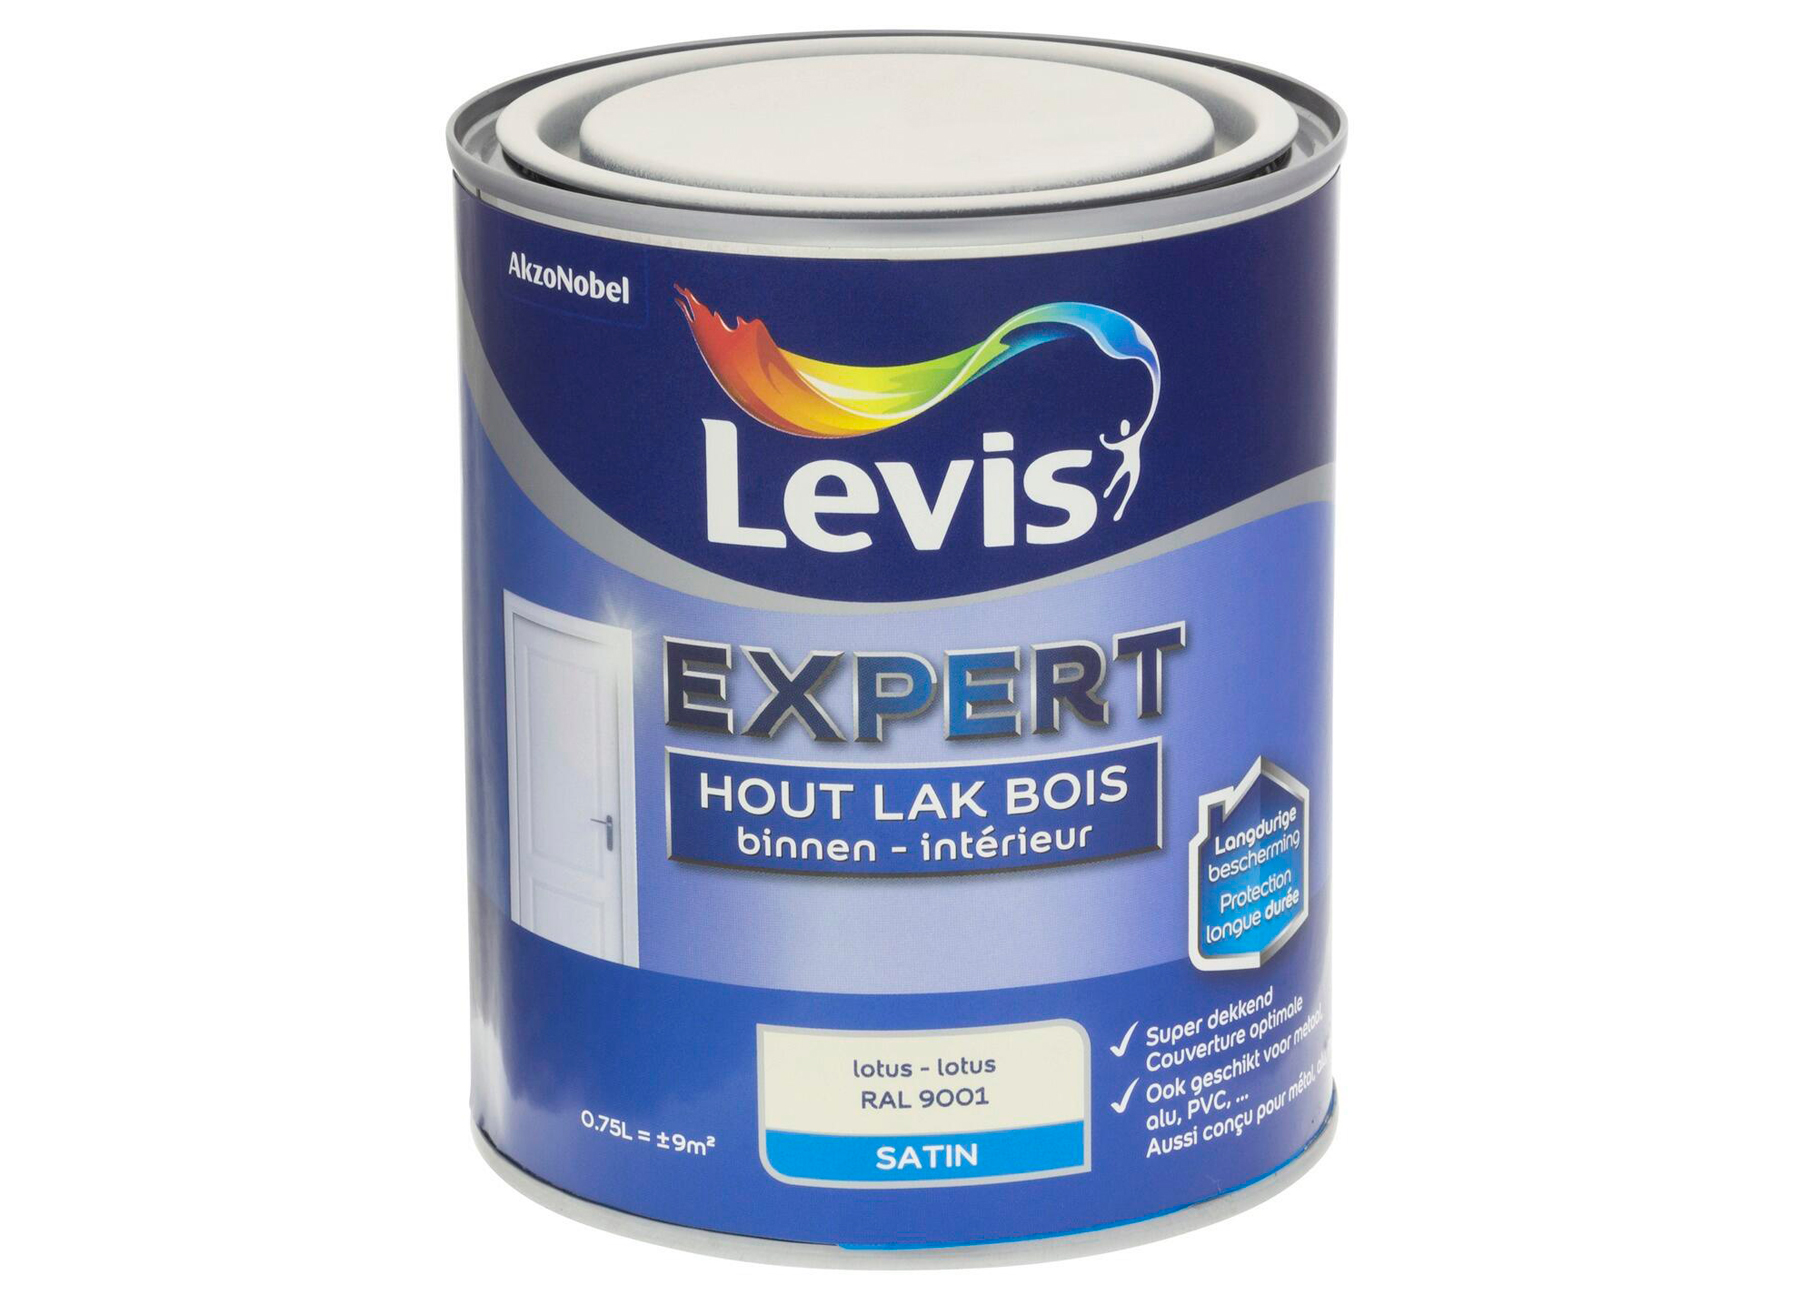 LEVIS EXPERT LAK BOIS INTERIEUR SATIN LOTUS 4441 0,75L